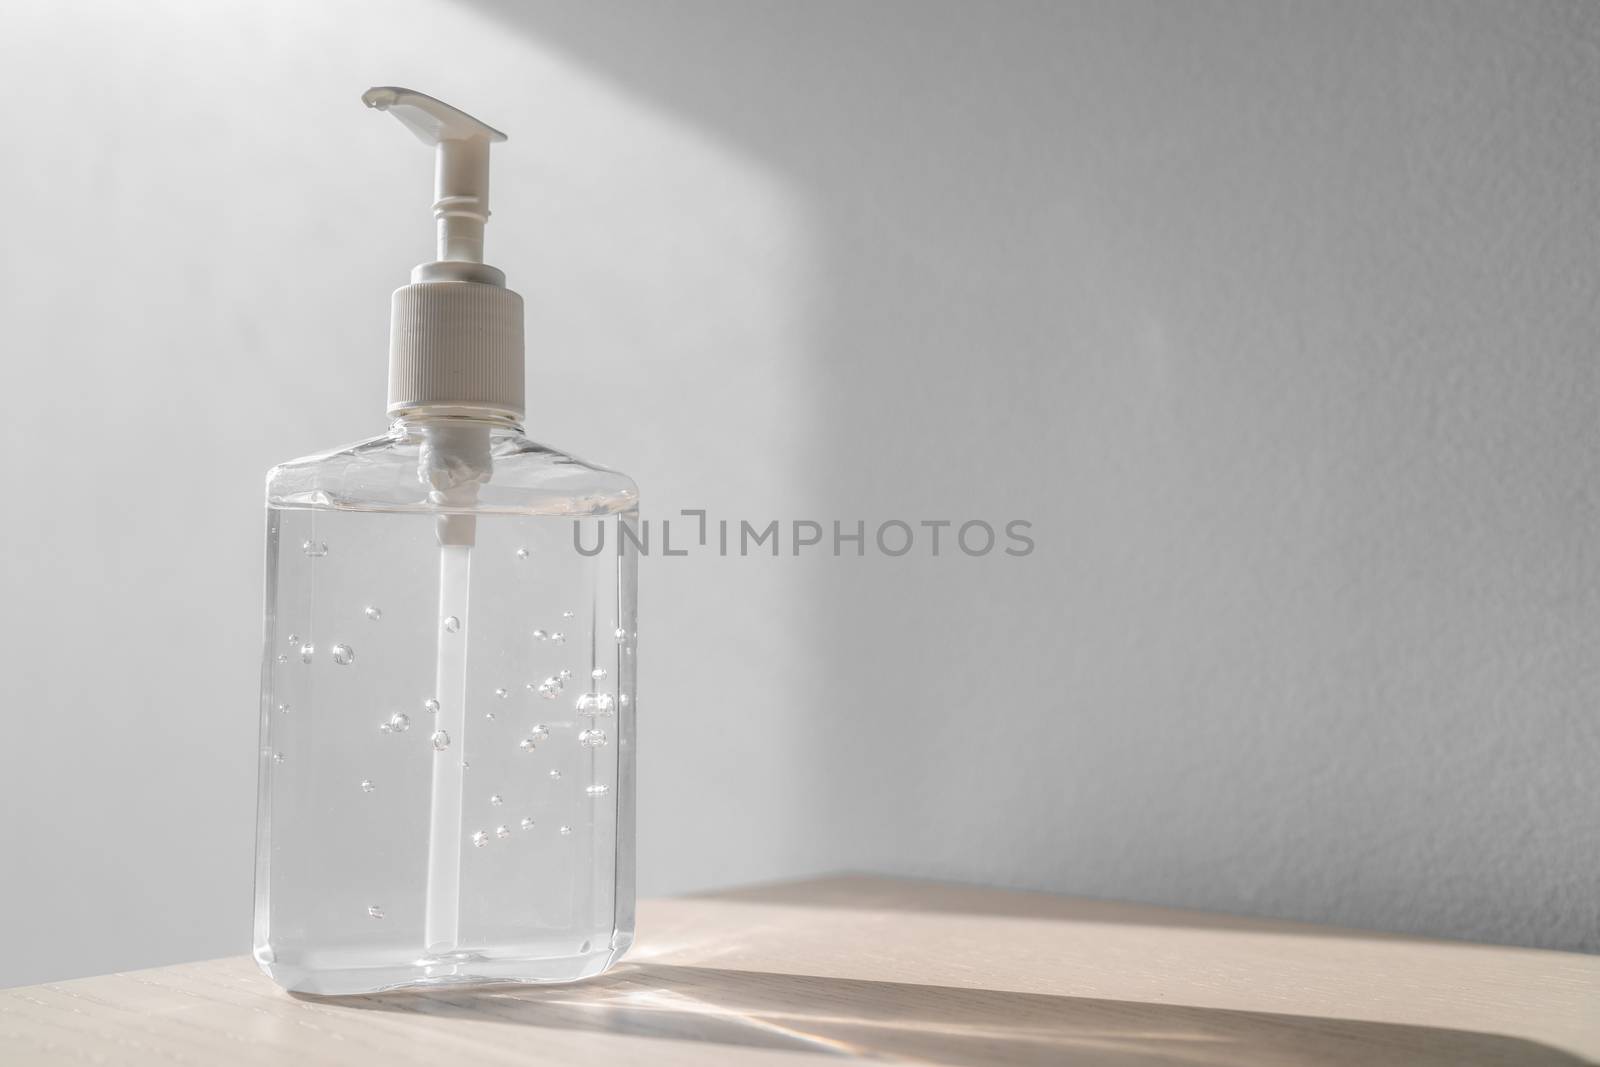 Coronavirus hand sanitizer bottle dispensing rubbing alcohol gel for hands hygiene health care prevention. Corona virus outbreak pandemic sanitiser background by Maridav